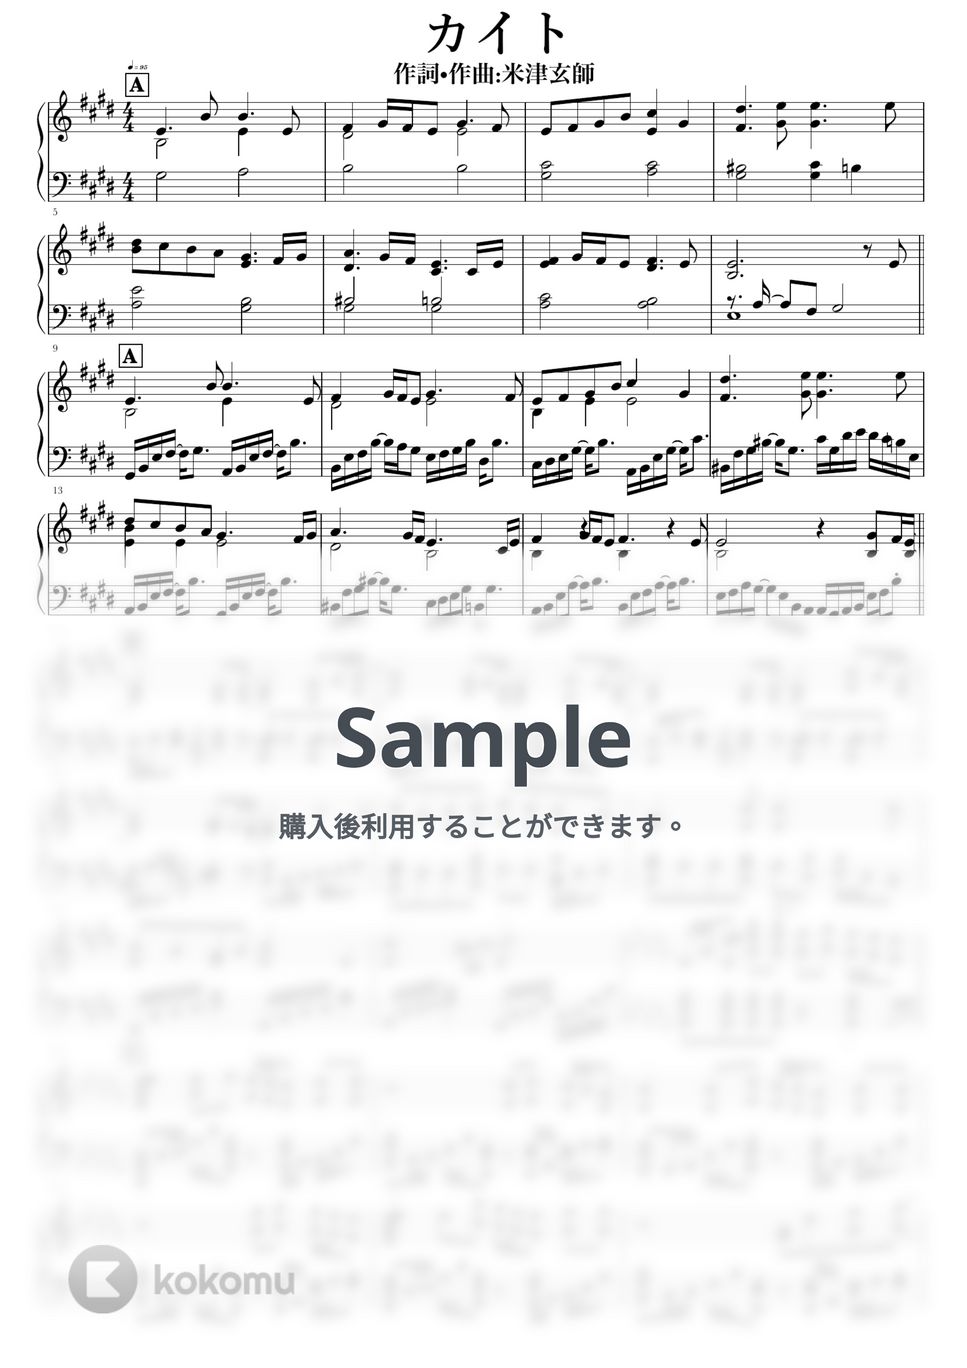 嵐 - カイト by NOTES music